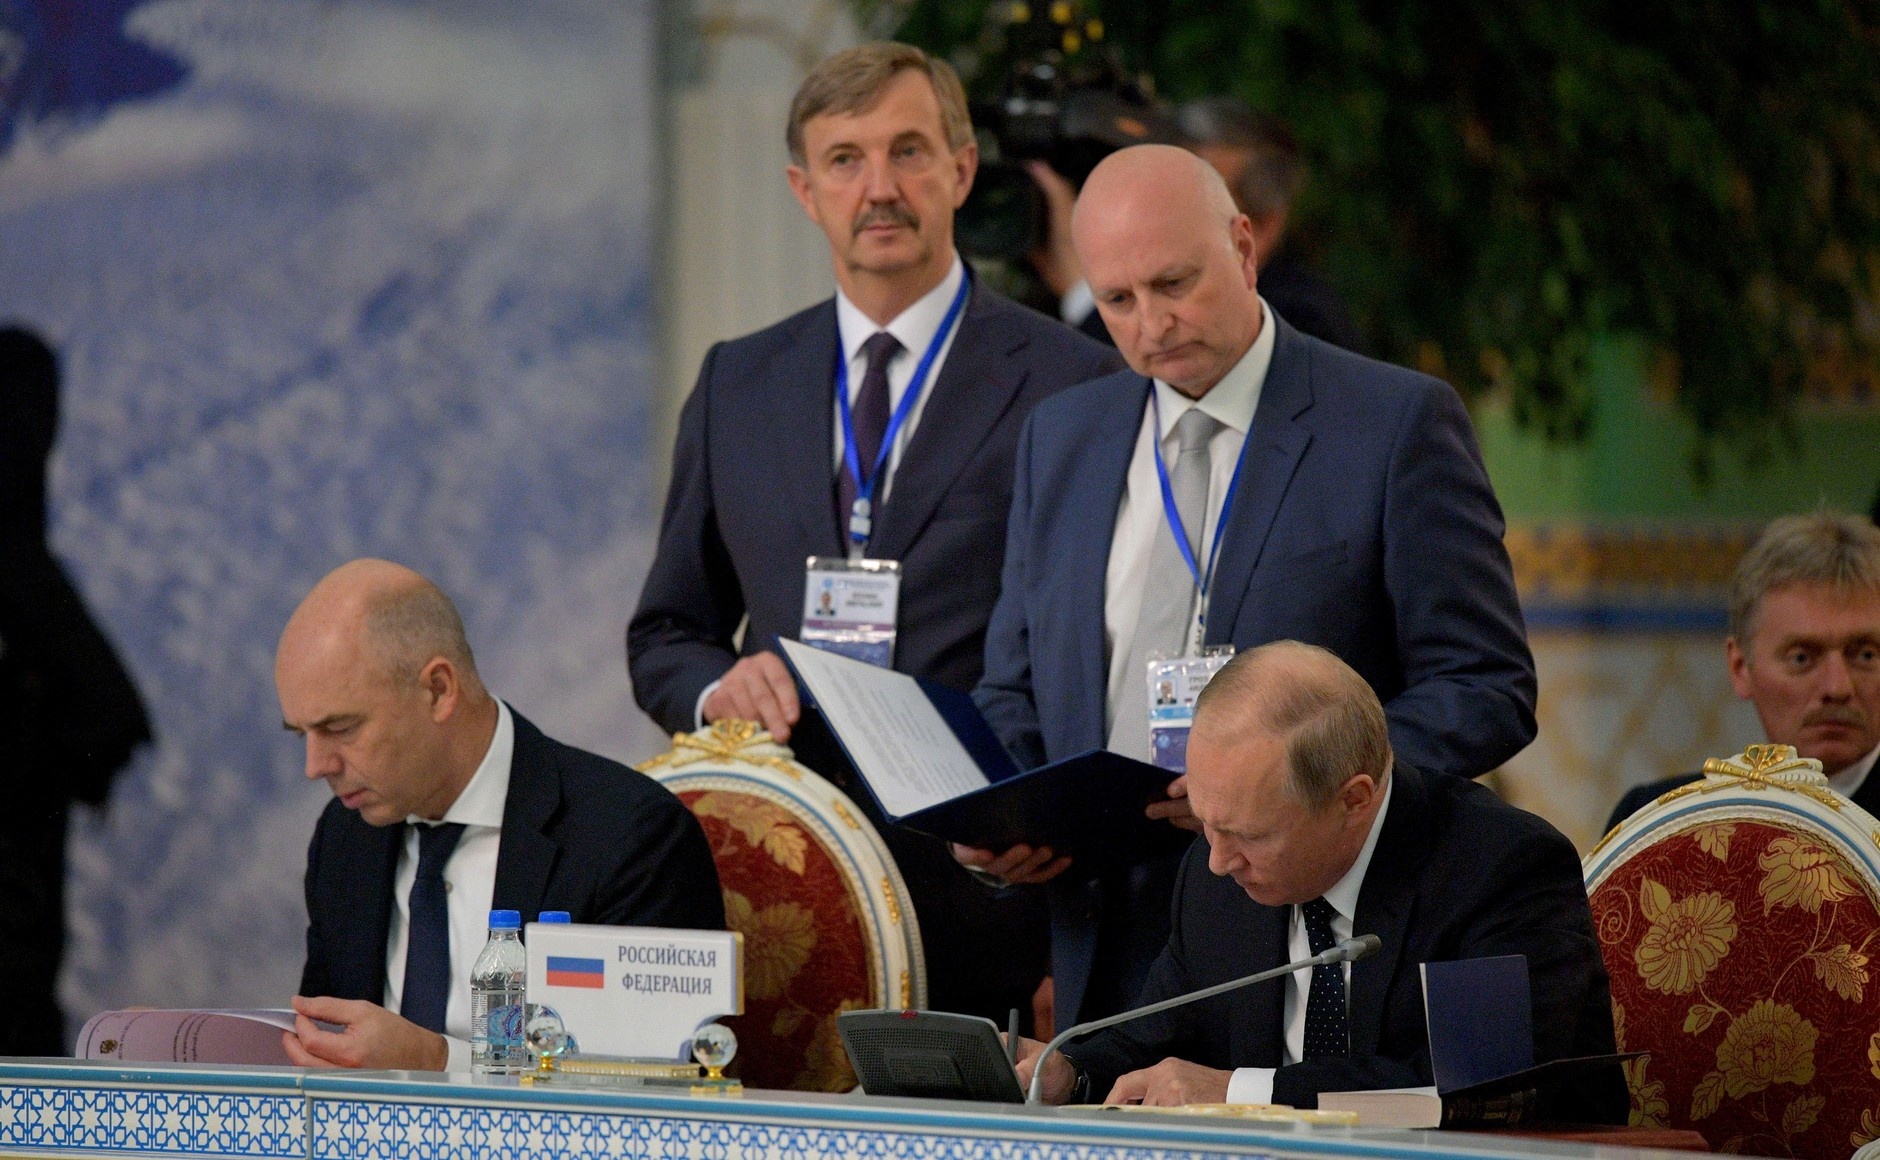 Книга лежала рядом с Путиным в время подписания документов по итогам заседания Совета глав государств СНГ. Фото: kremlin.ru